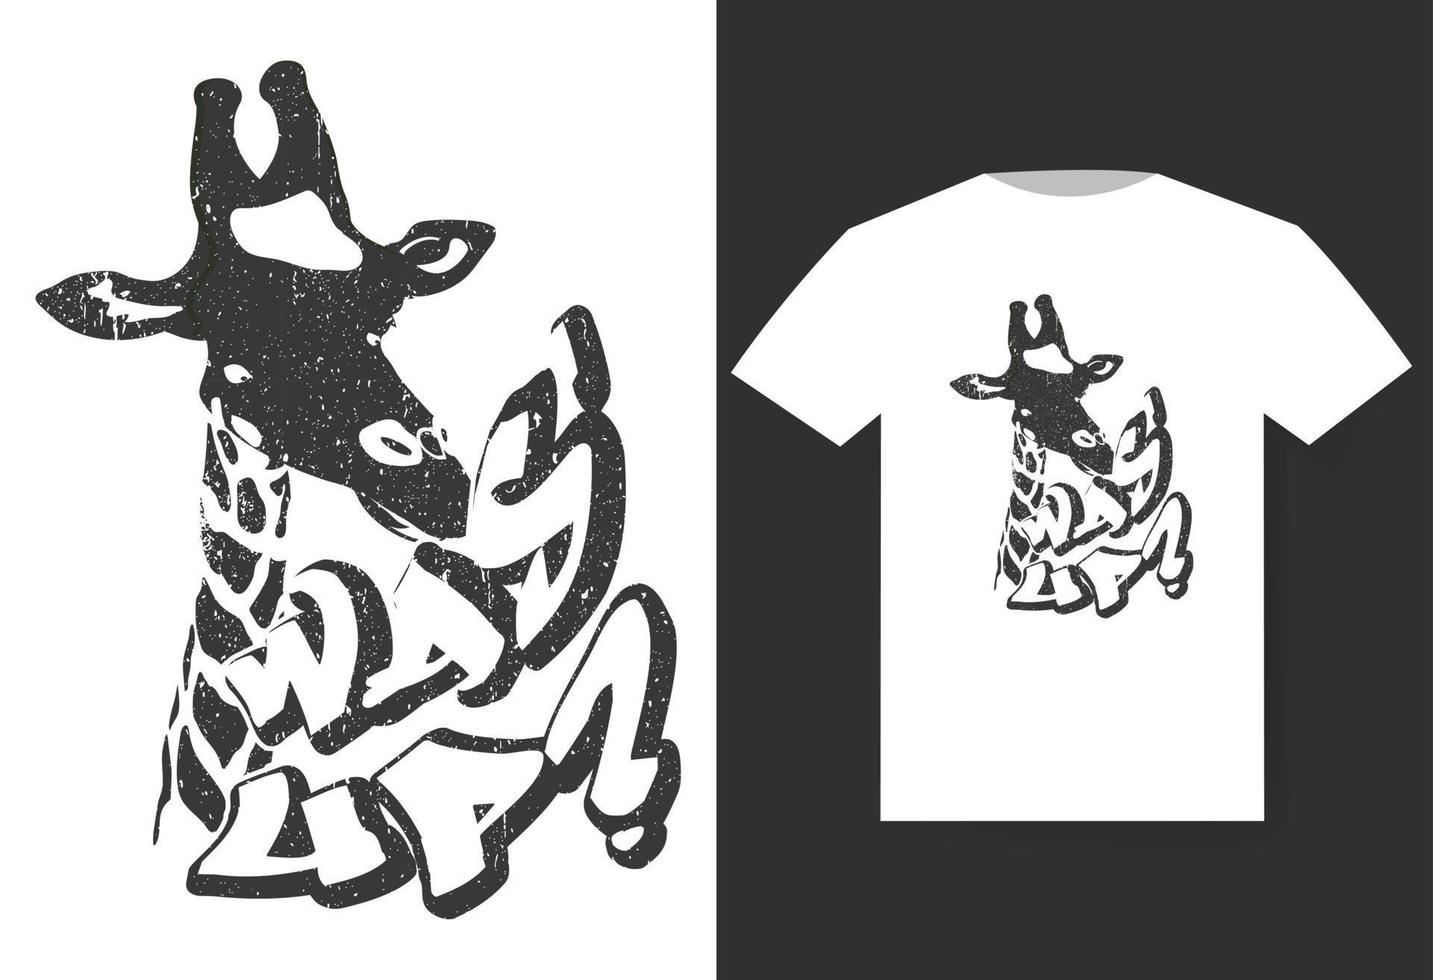 impressão de ilustração vetorial com imagens e texto de girafa, adequado para impressão em uma camiseta ou moletom, design de camisa, estampa de camisa, estampa de girafa, desenho de girafa, camisa de moda, camisa de safári vetor